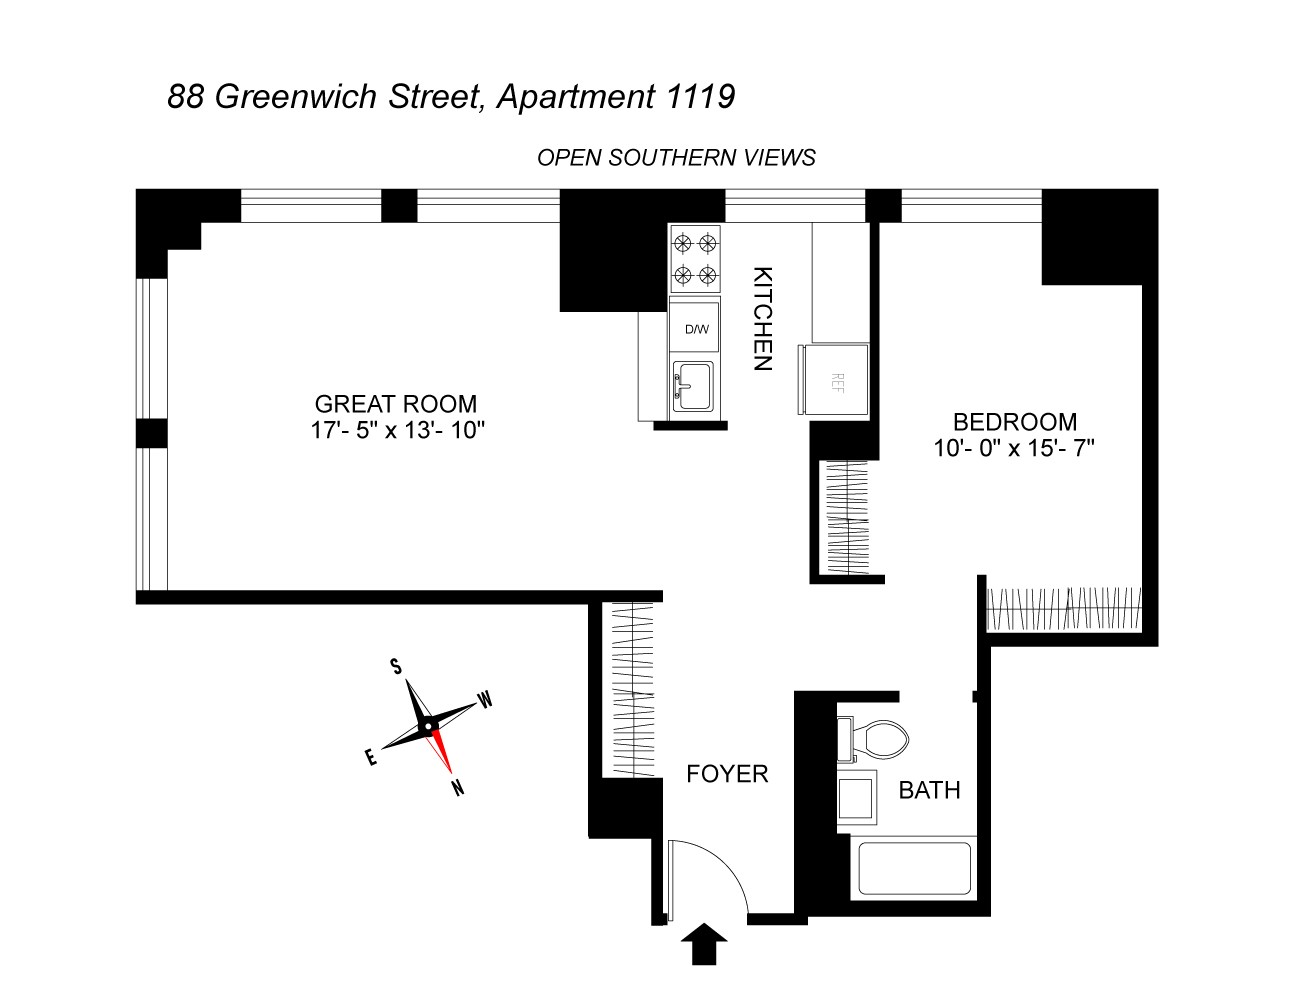 Floorplan for 88 Greenwich Street, 1119